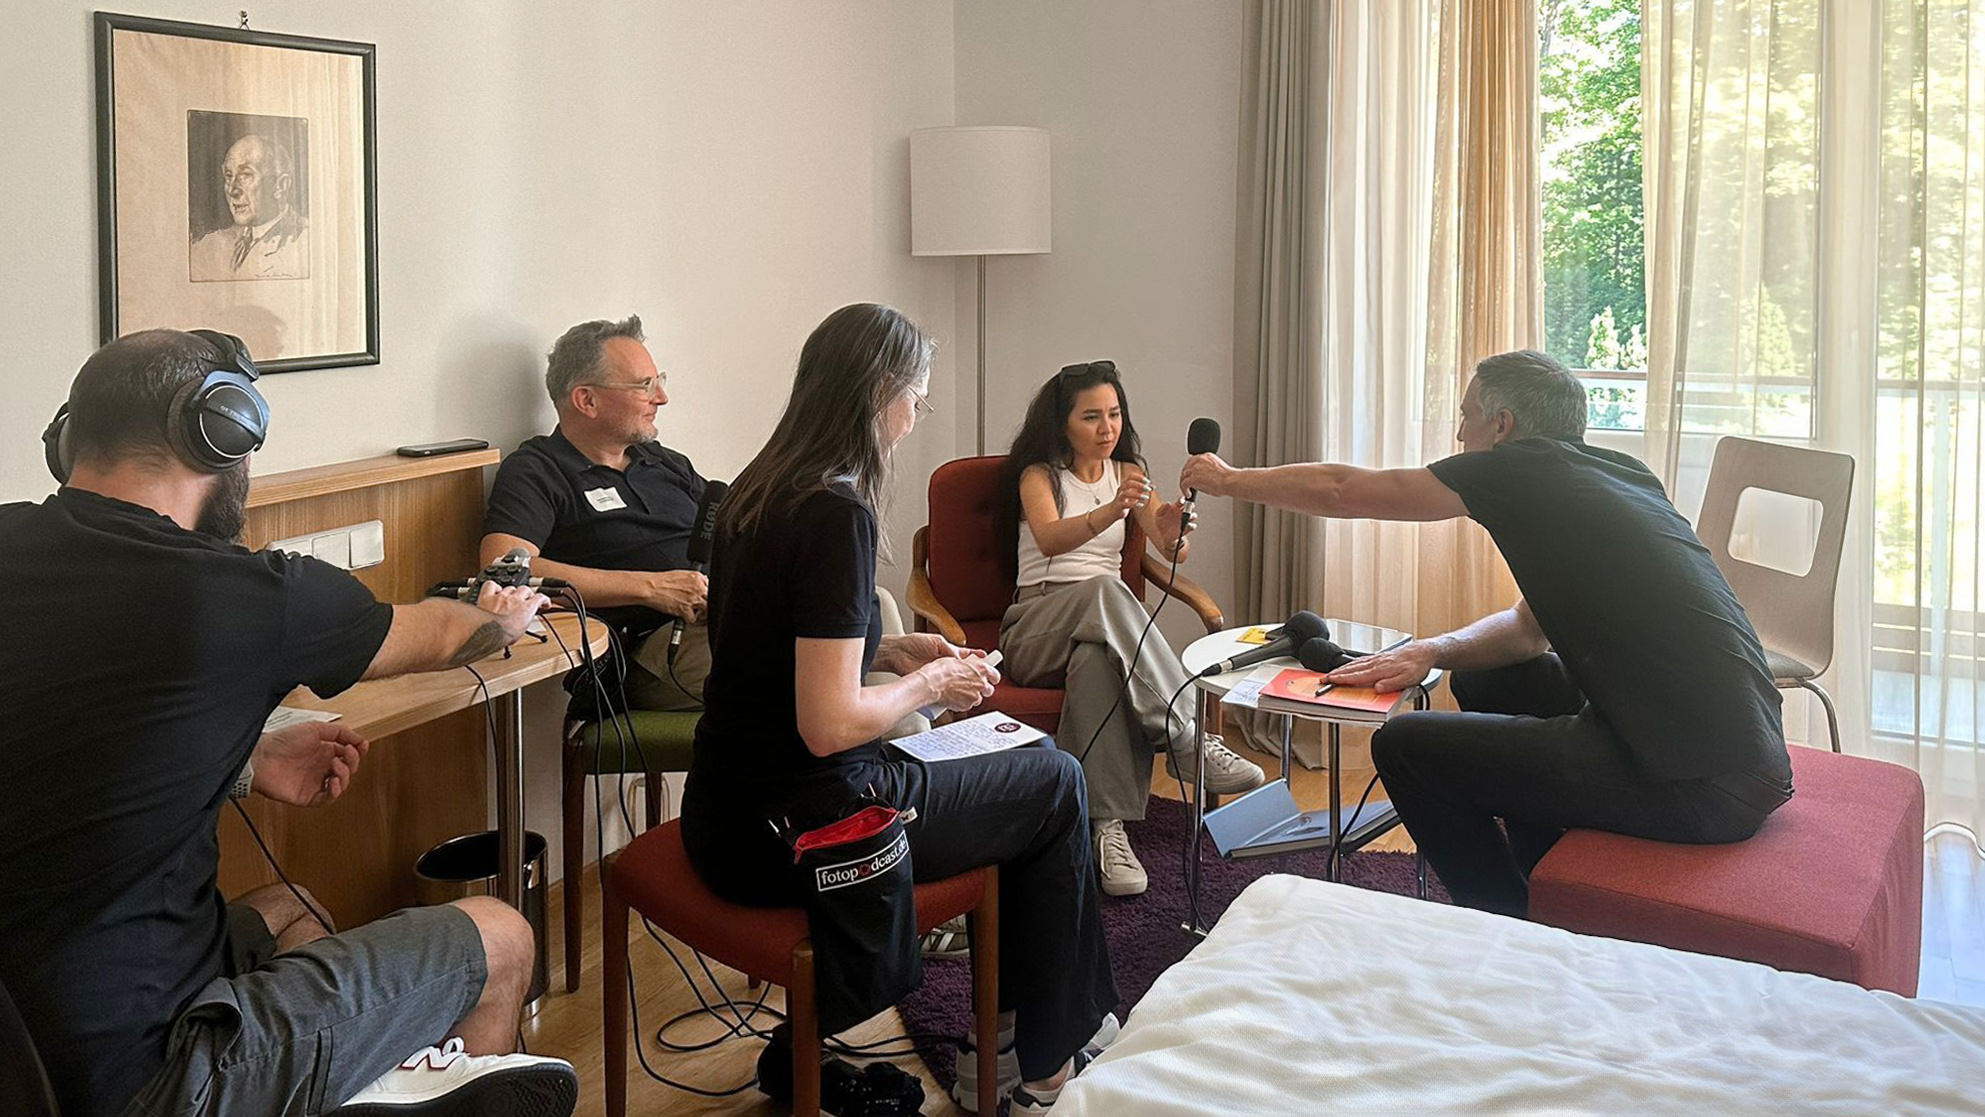 Interview mit Fatimah Hossaini im Hotel At The Park in Baden bei Wien, v.l.n.r. Thomas B. Jones, Thomas Pöhler, Ulrike Schumann, Fatimah Hossaini, Kai Behrmann